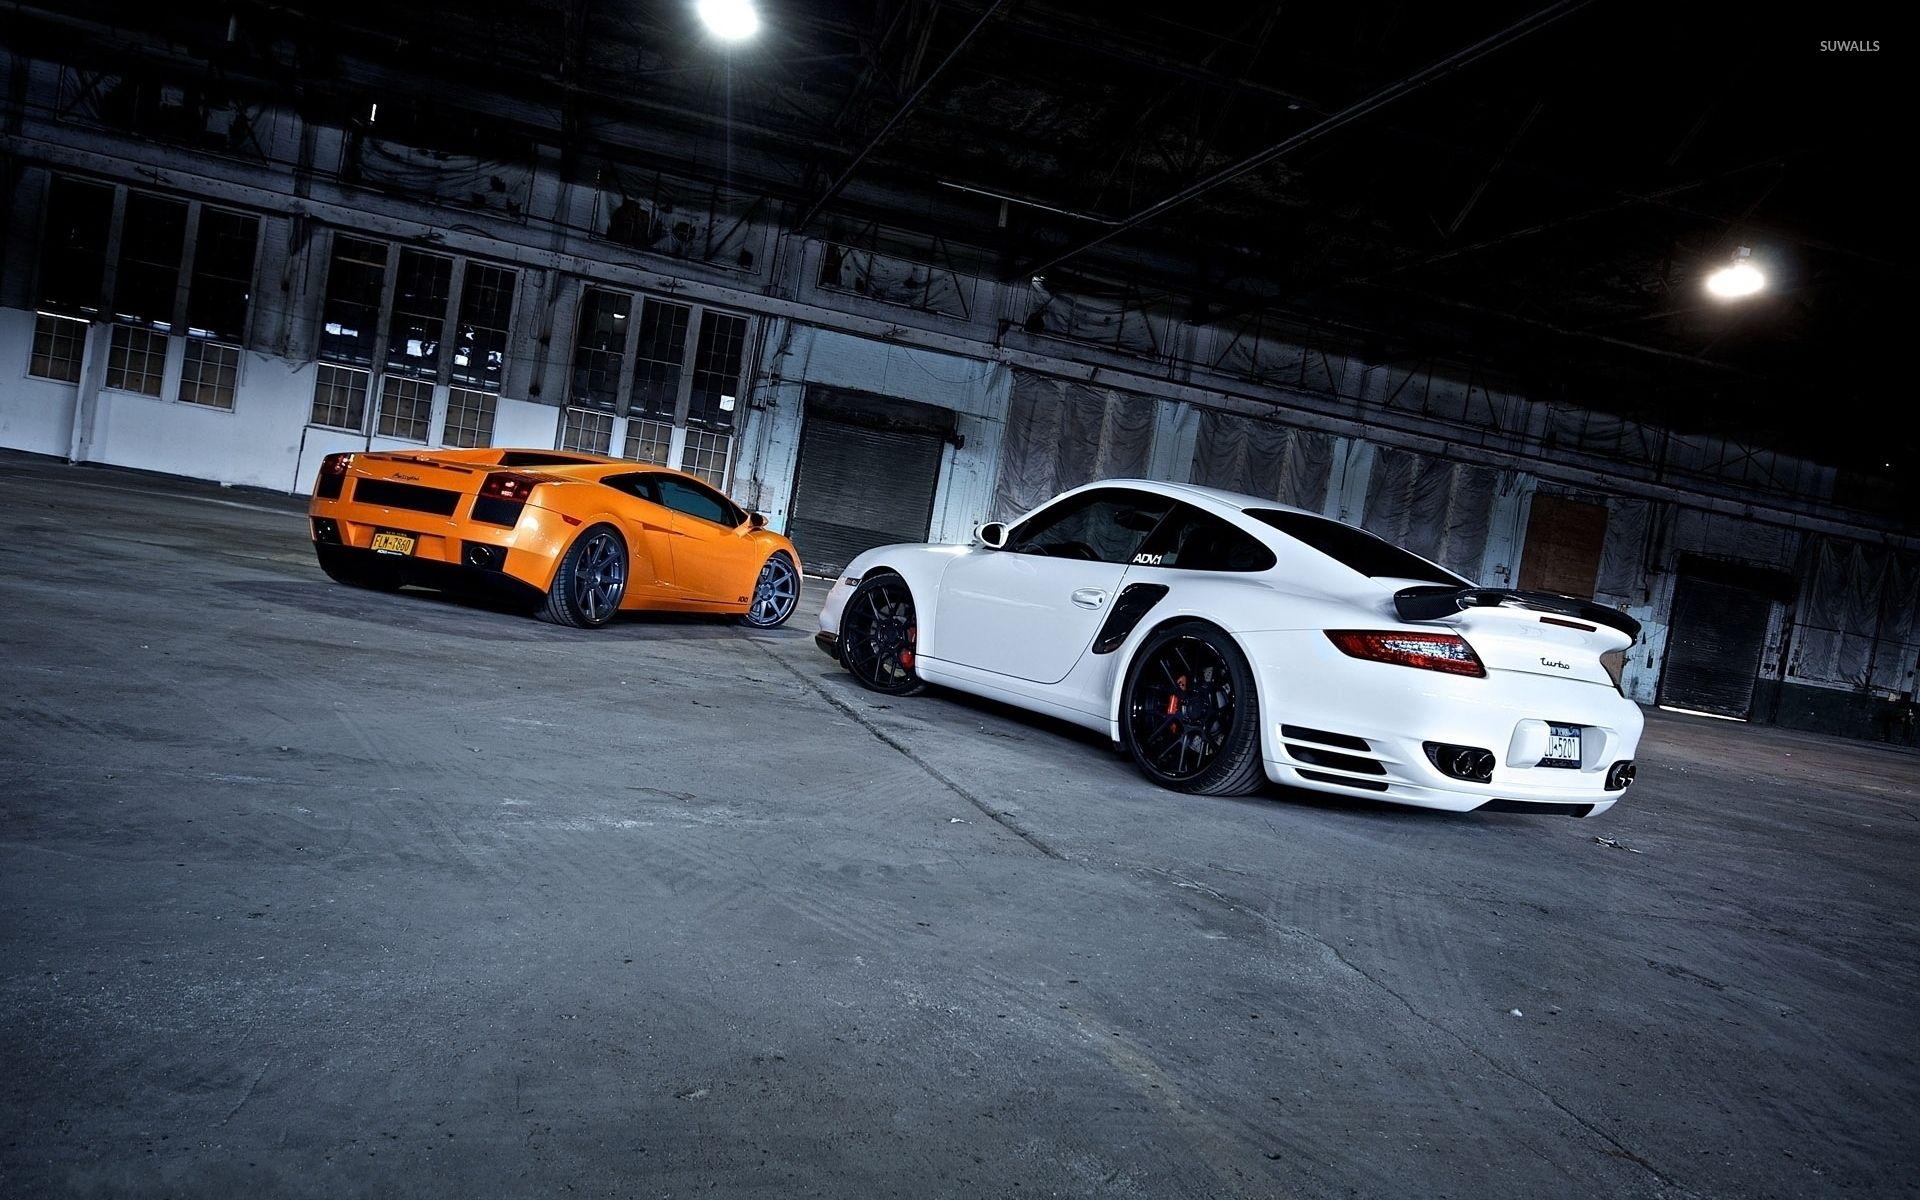 Lamborghini Gallardo and Porsche 911 wallpapers